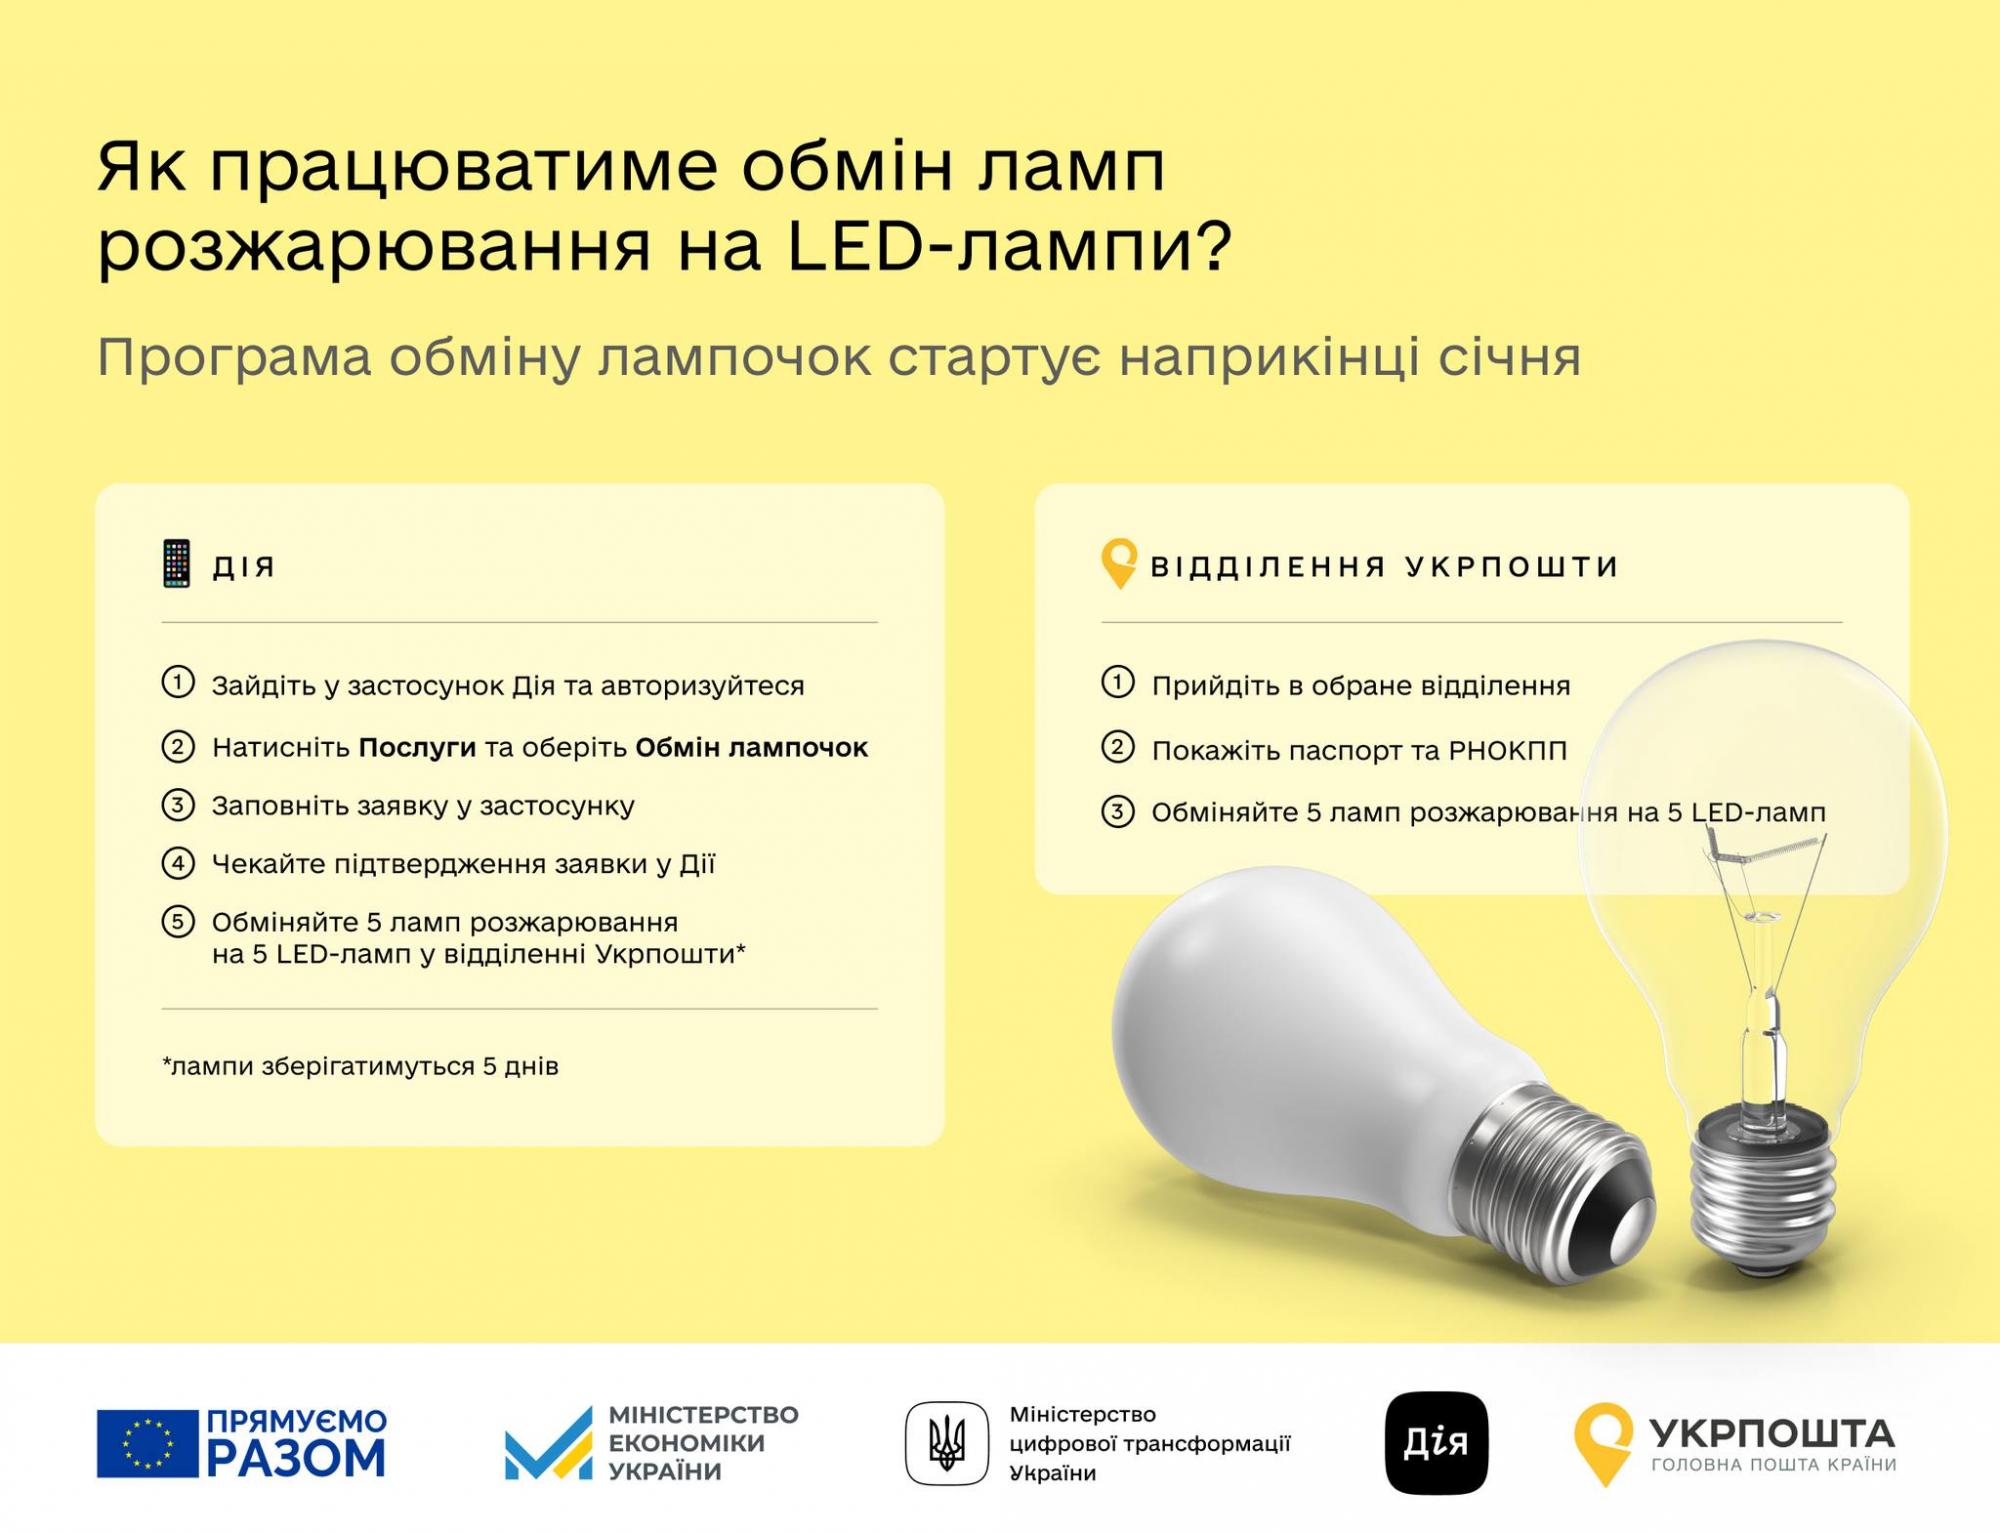 Українці в селах можуть обмінювати лампи розжарювання: коли це можна зробити